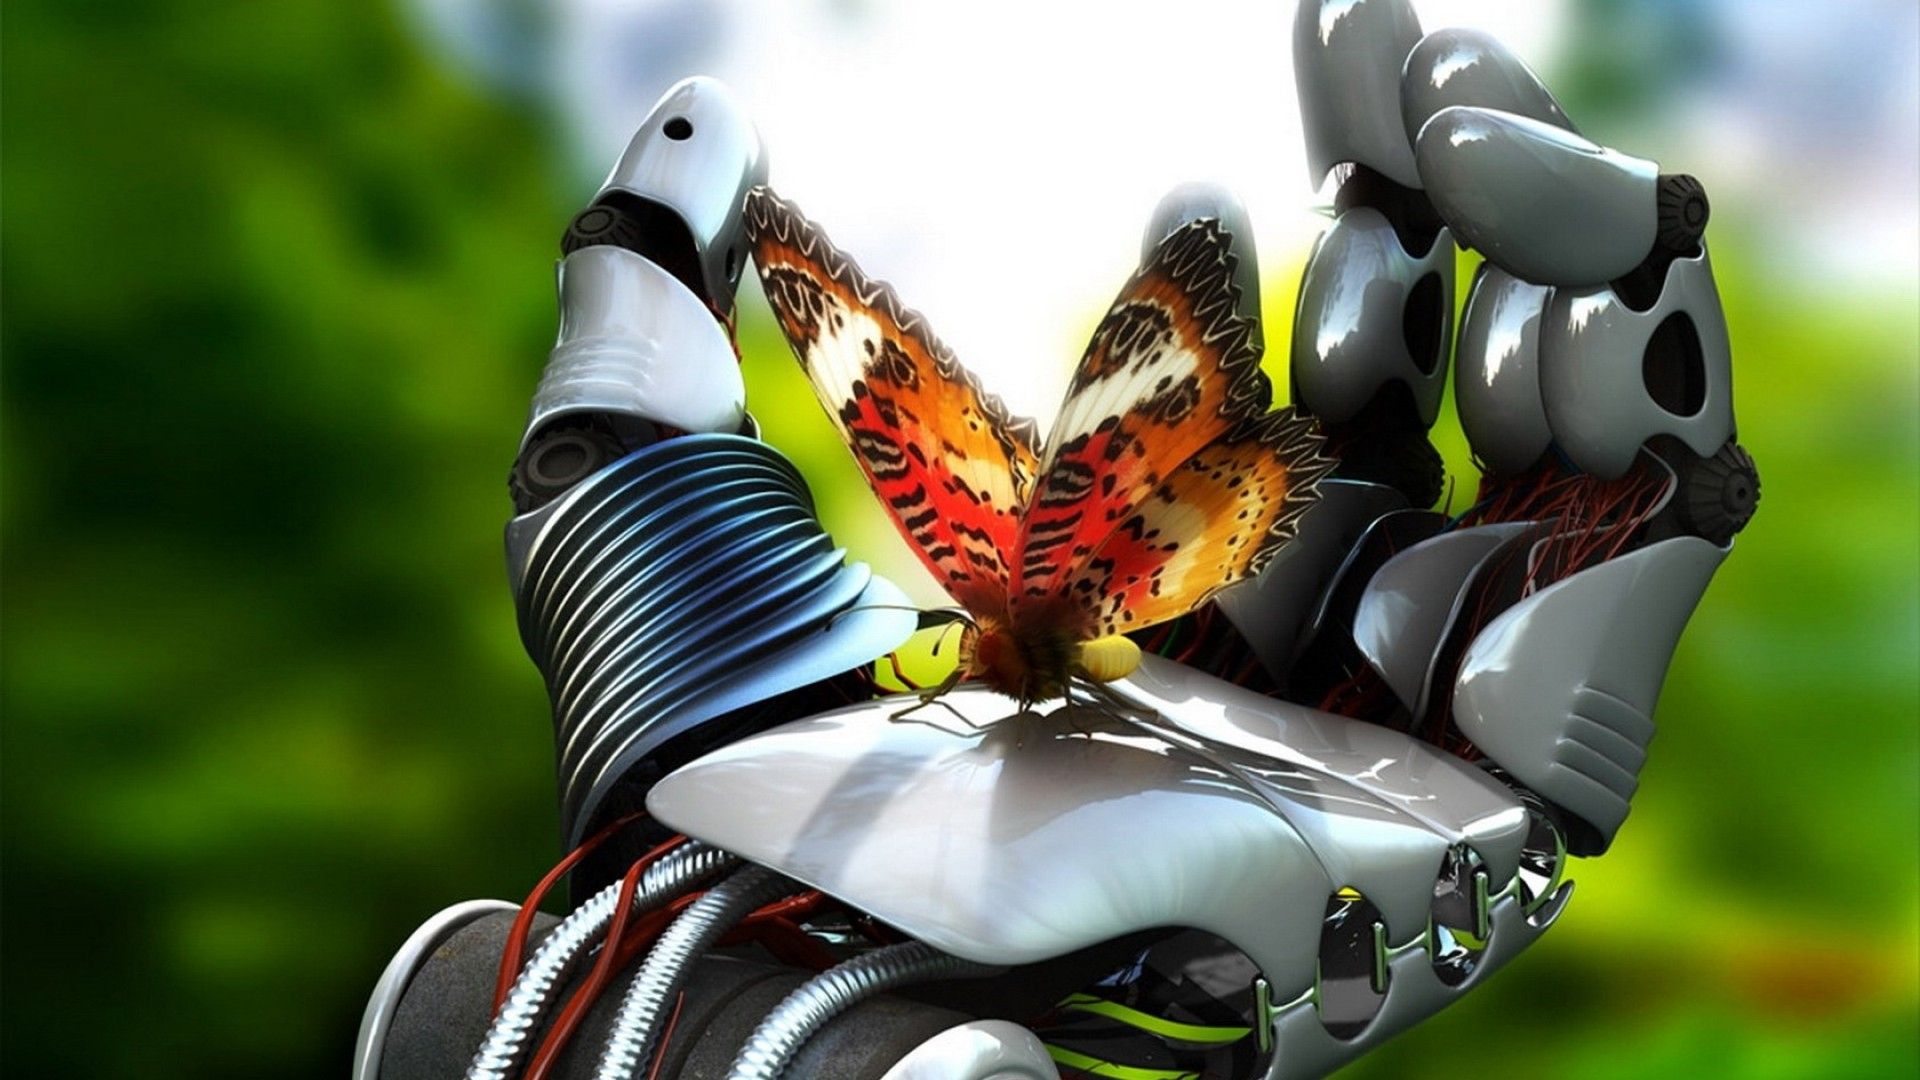 Robot Hand Butterfly 3d Wallpaper Image Full HD